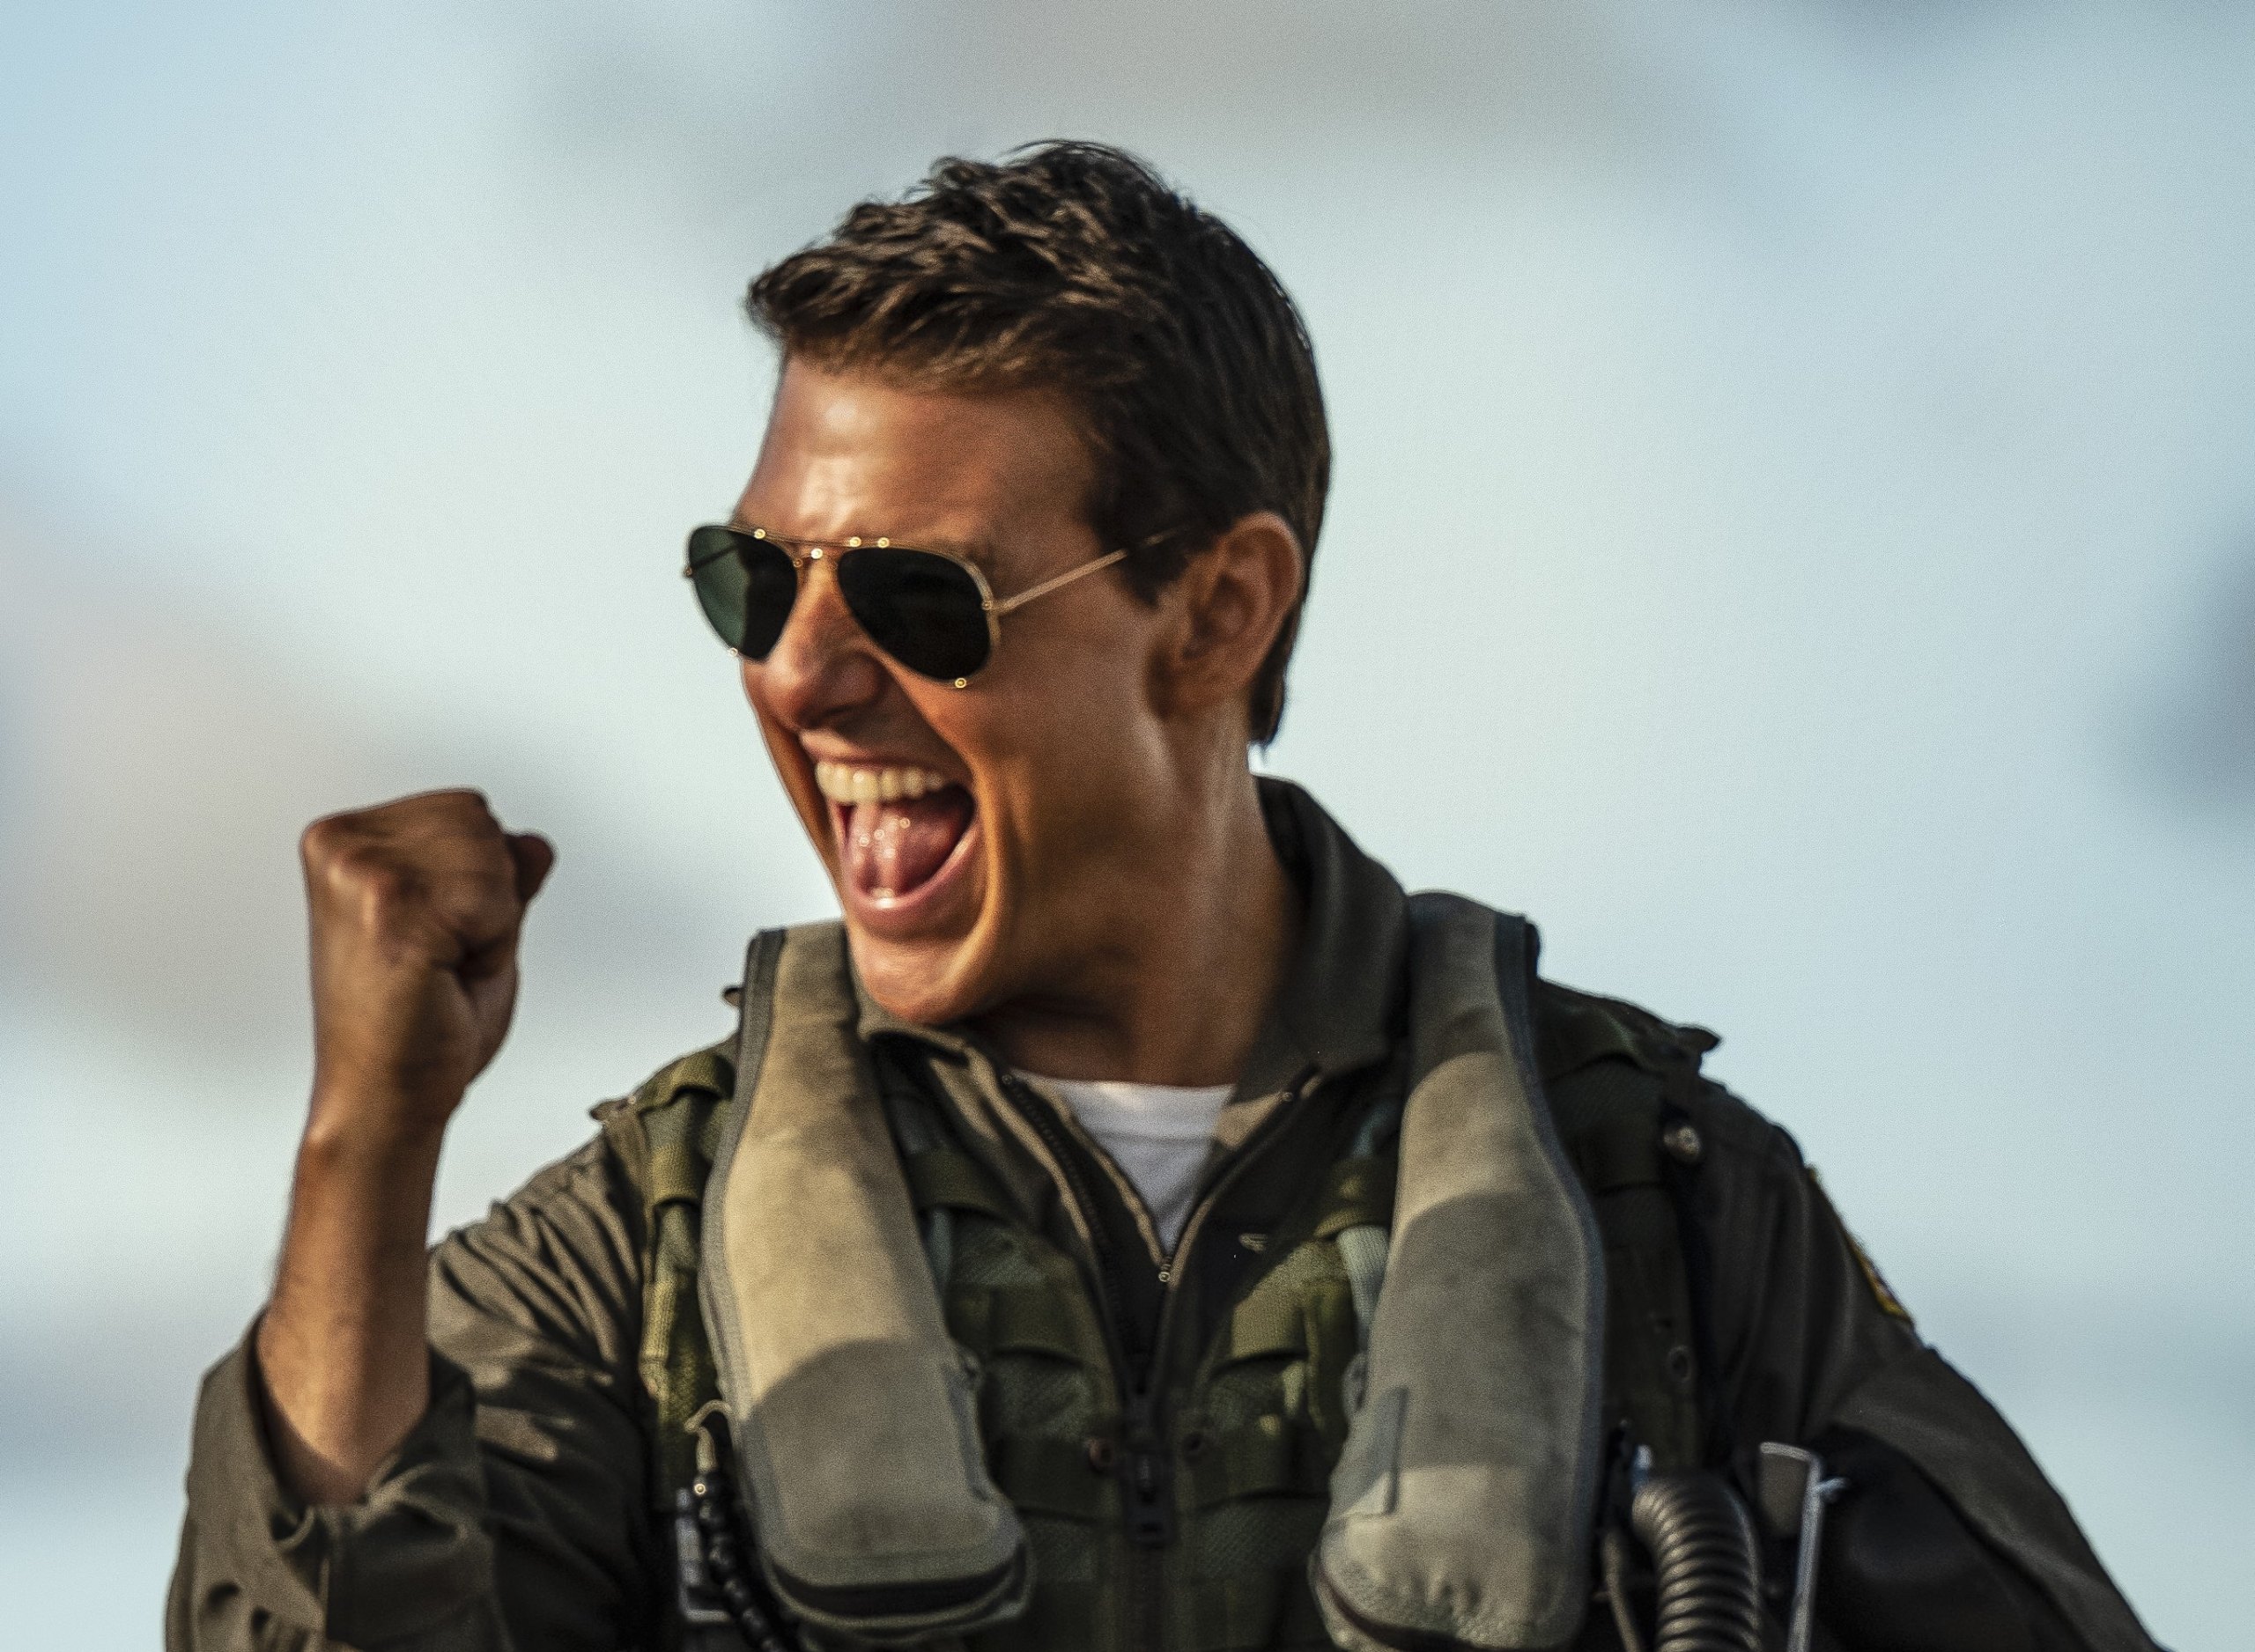 Tom Cruise como Maverick em Top Gun Maverick